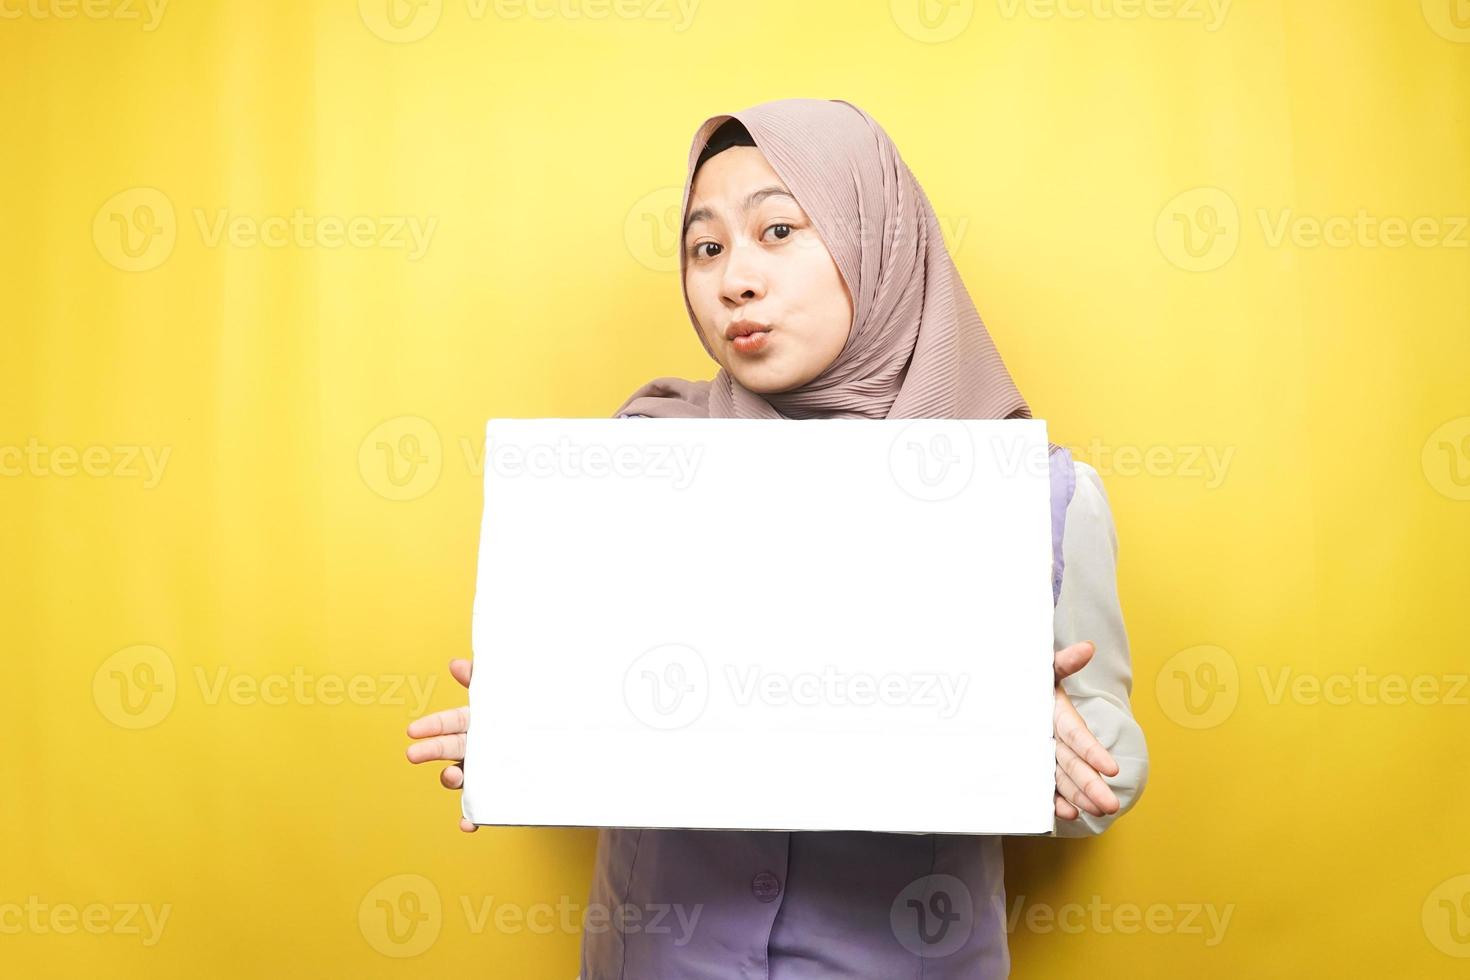 ganska ung muslimsk kvinna chockad, förvånad, wow, hand som håller en tom banderoll, plakat, vit tavla, tom skylttavla, vit reklamtavla, presentera något i kopieringsutrymmet, marknadsföring foto